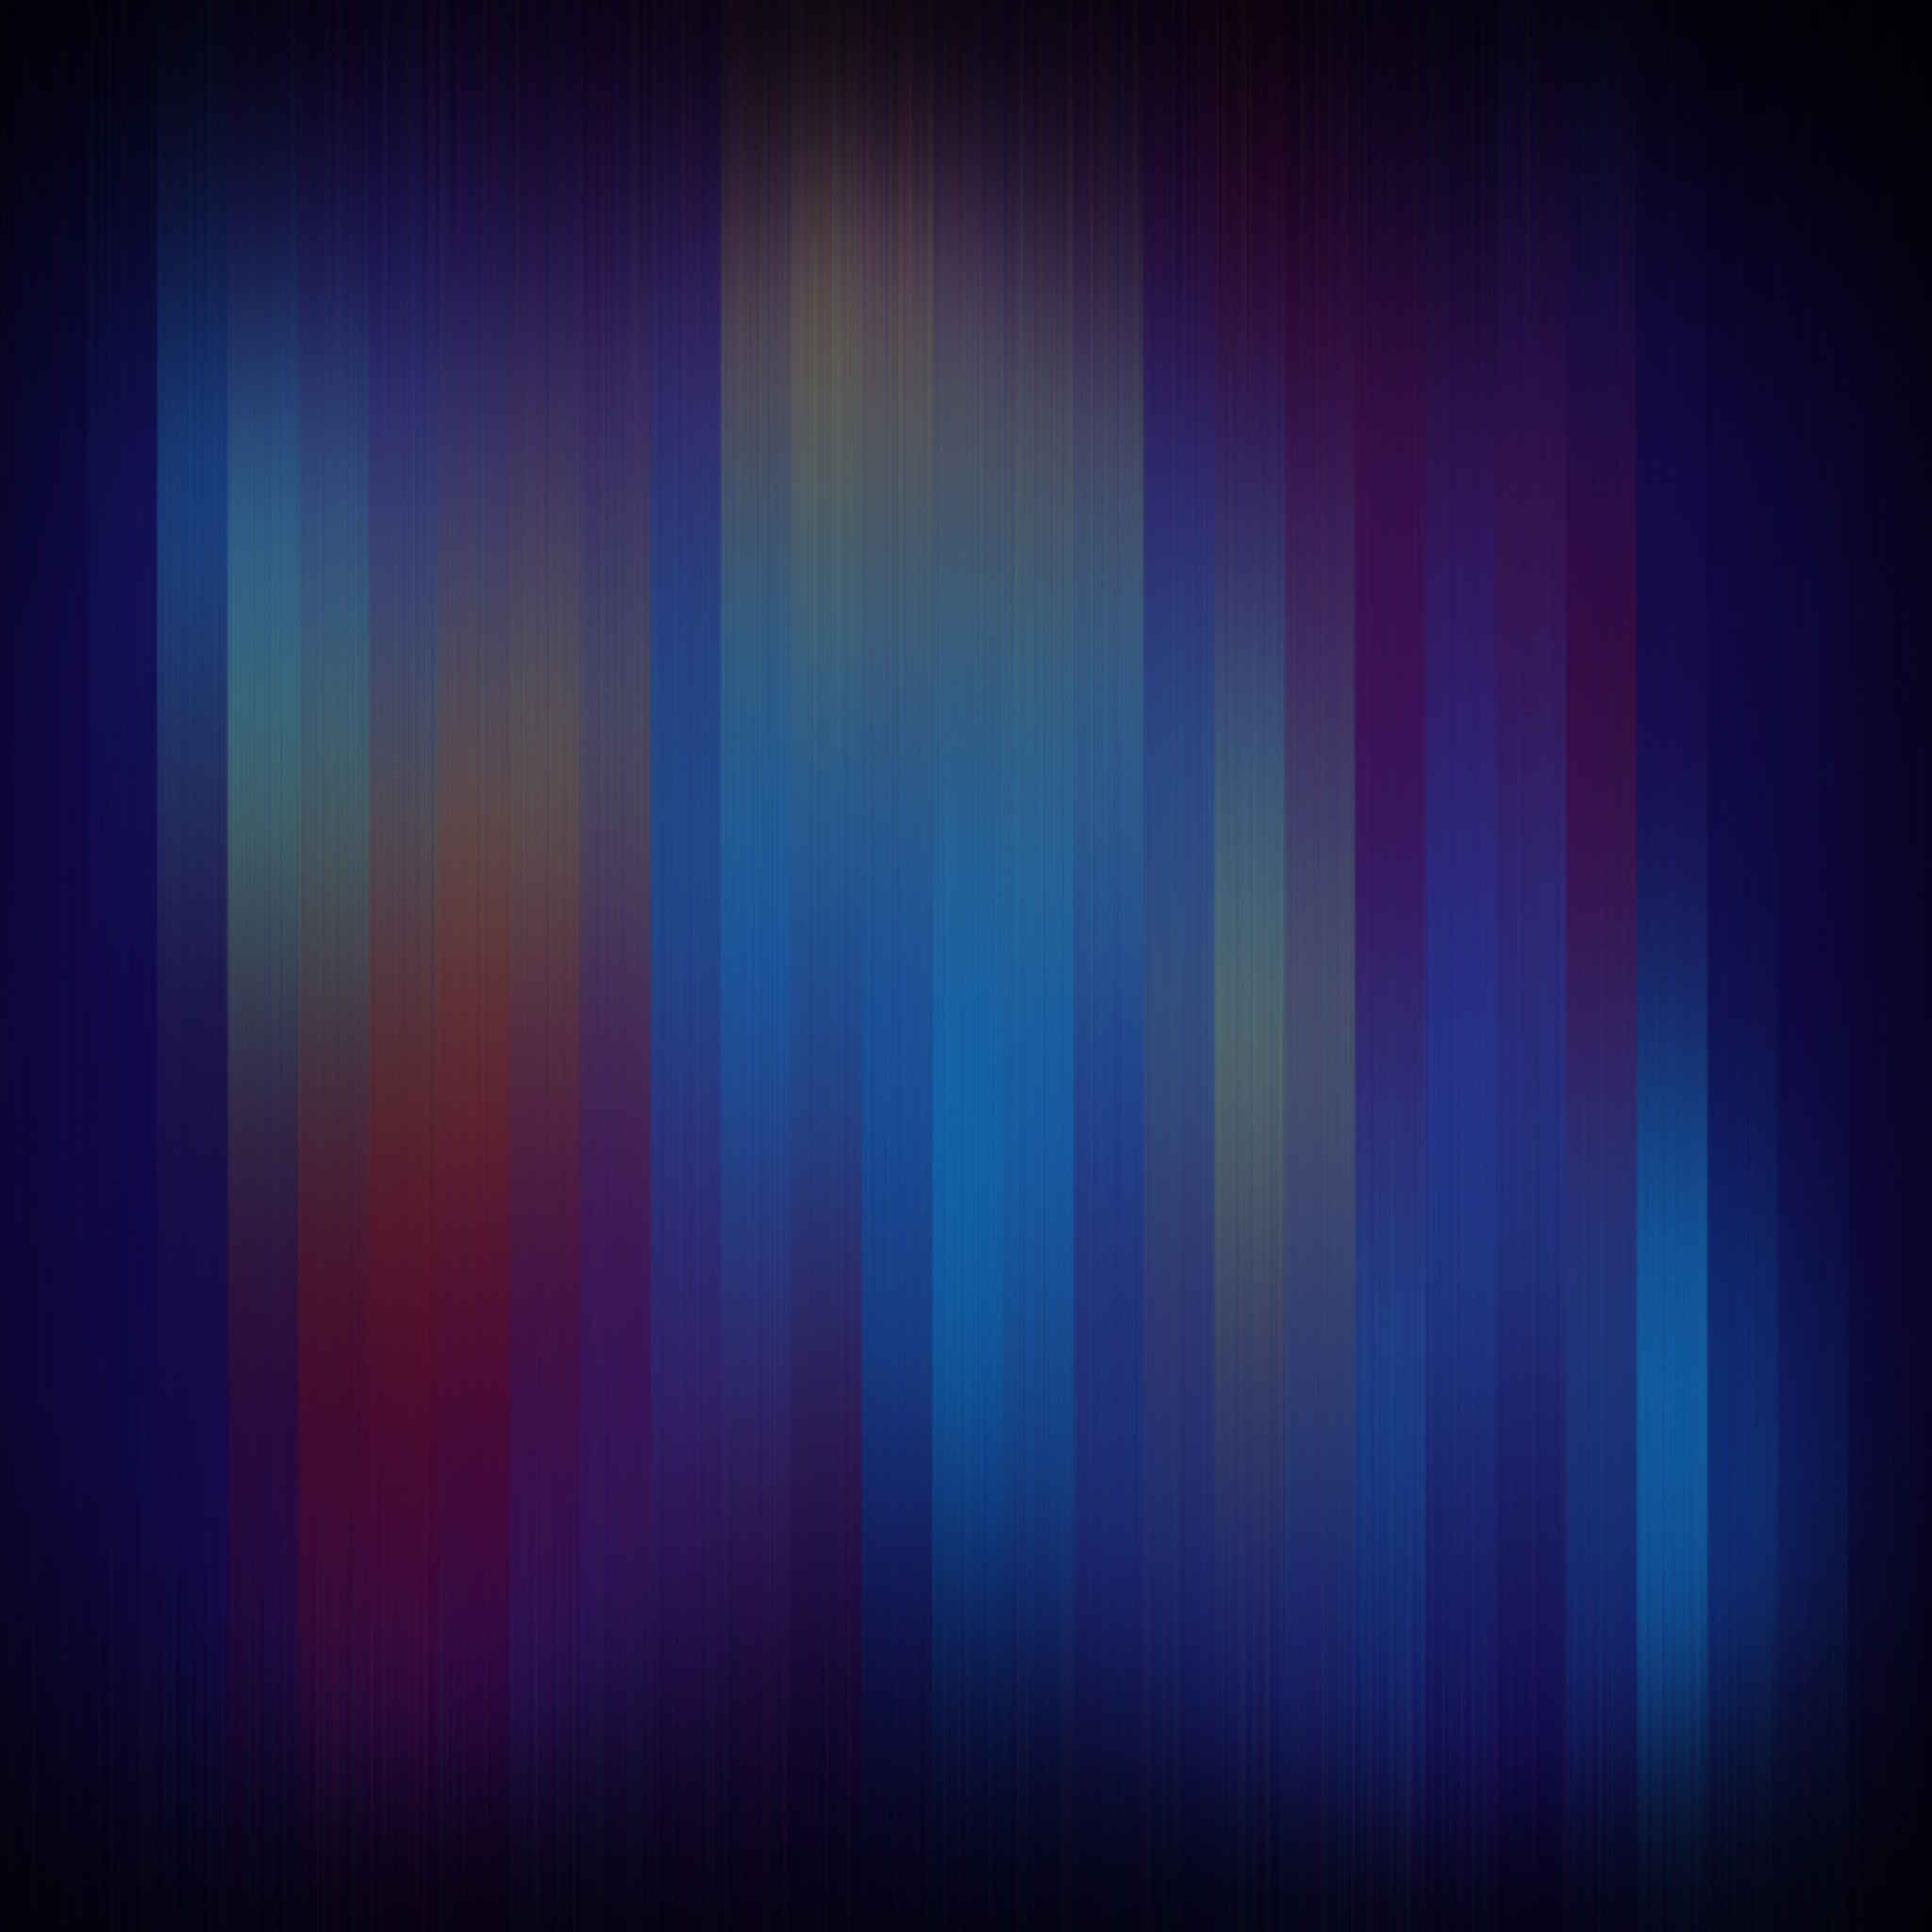 2048x2048 tapete,blau,violett,schwarz,lila,licht